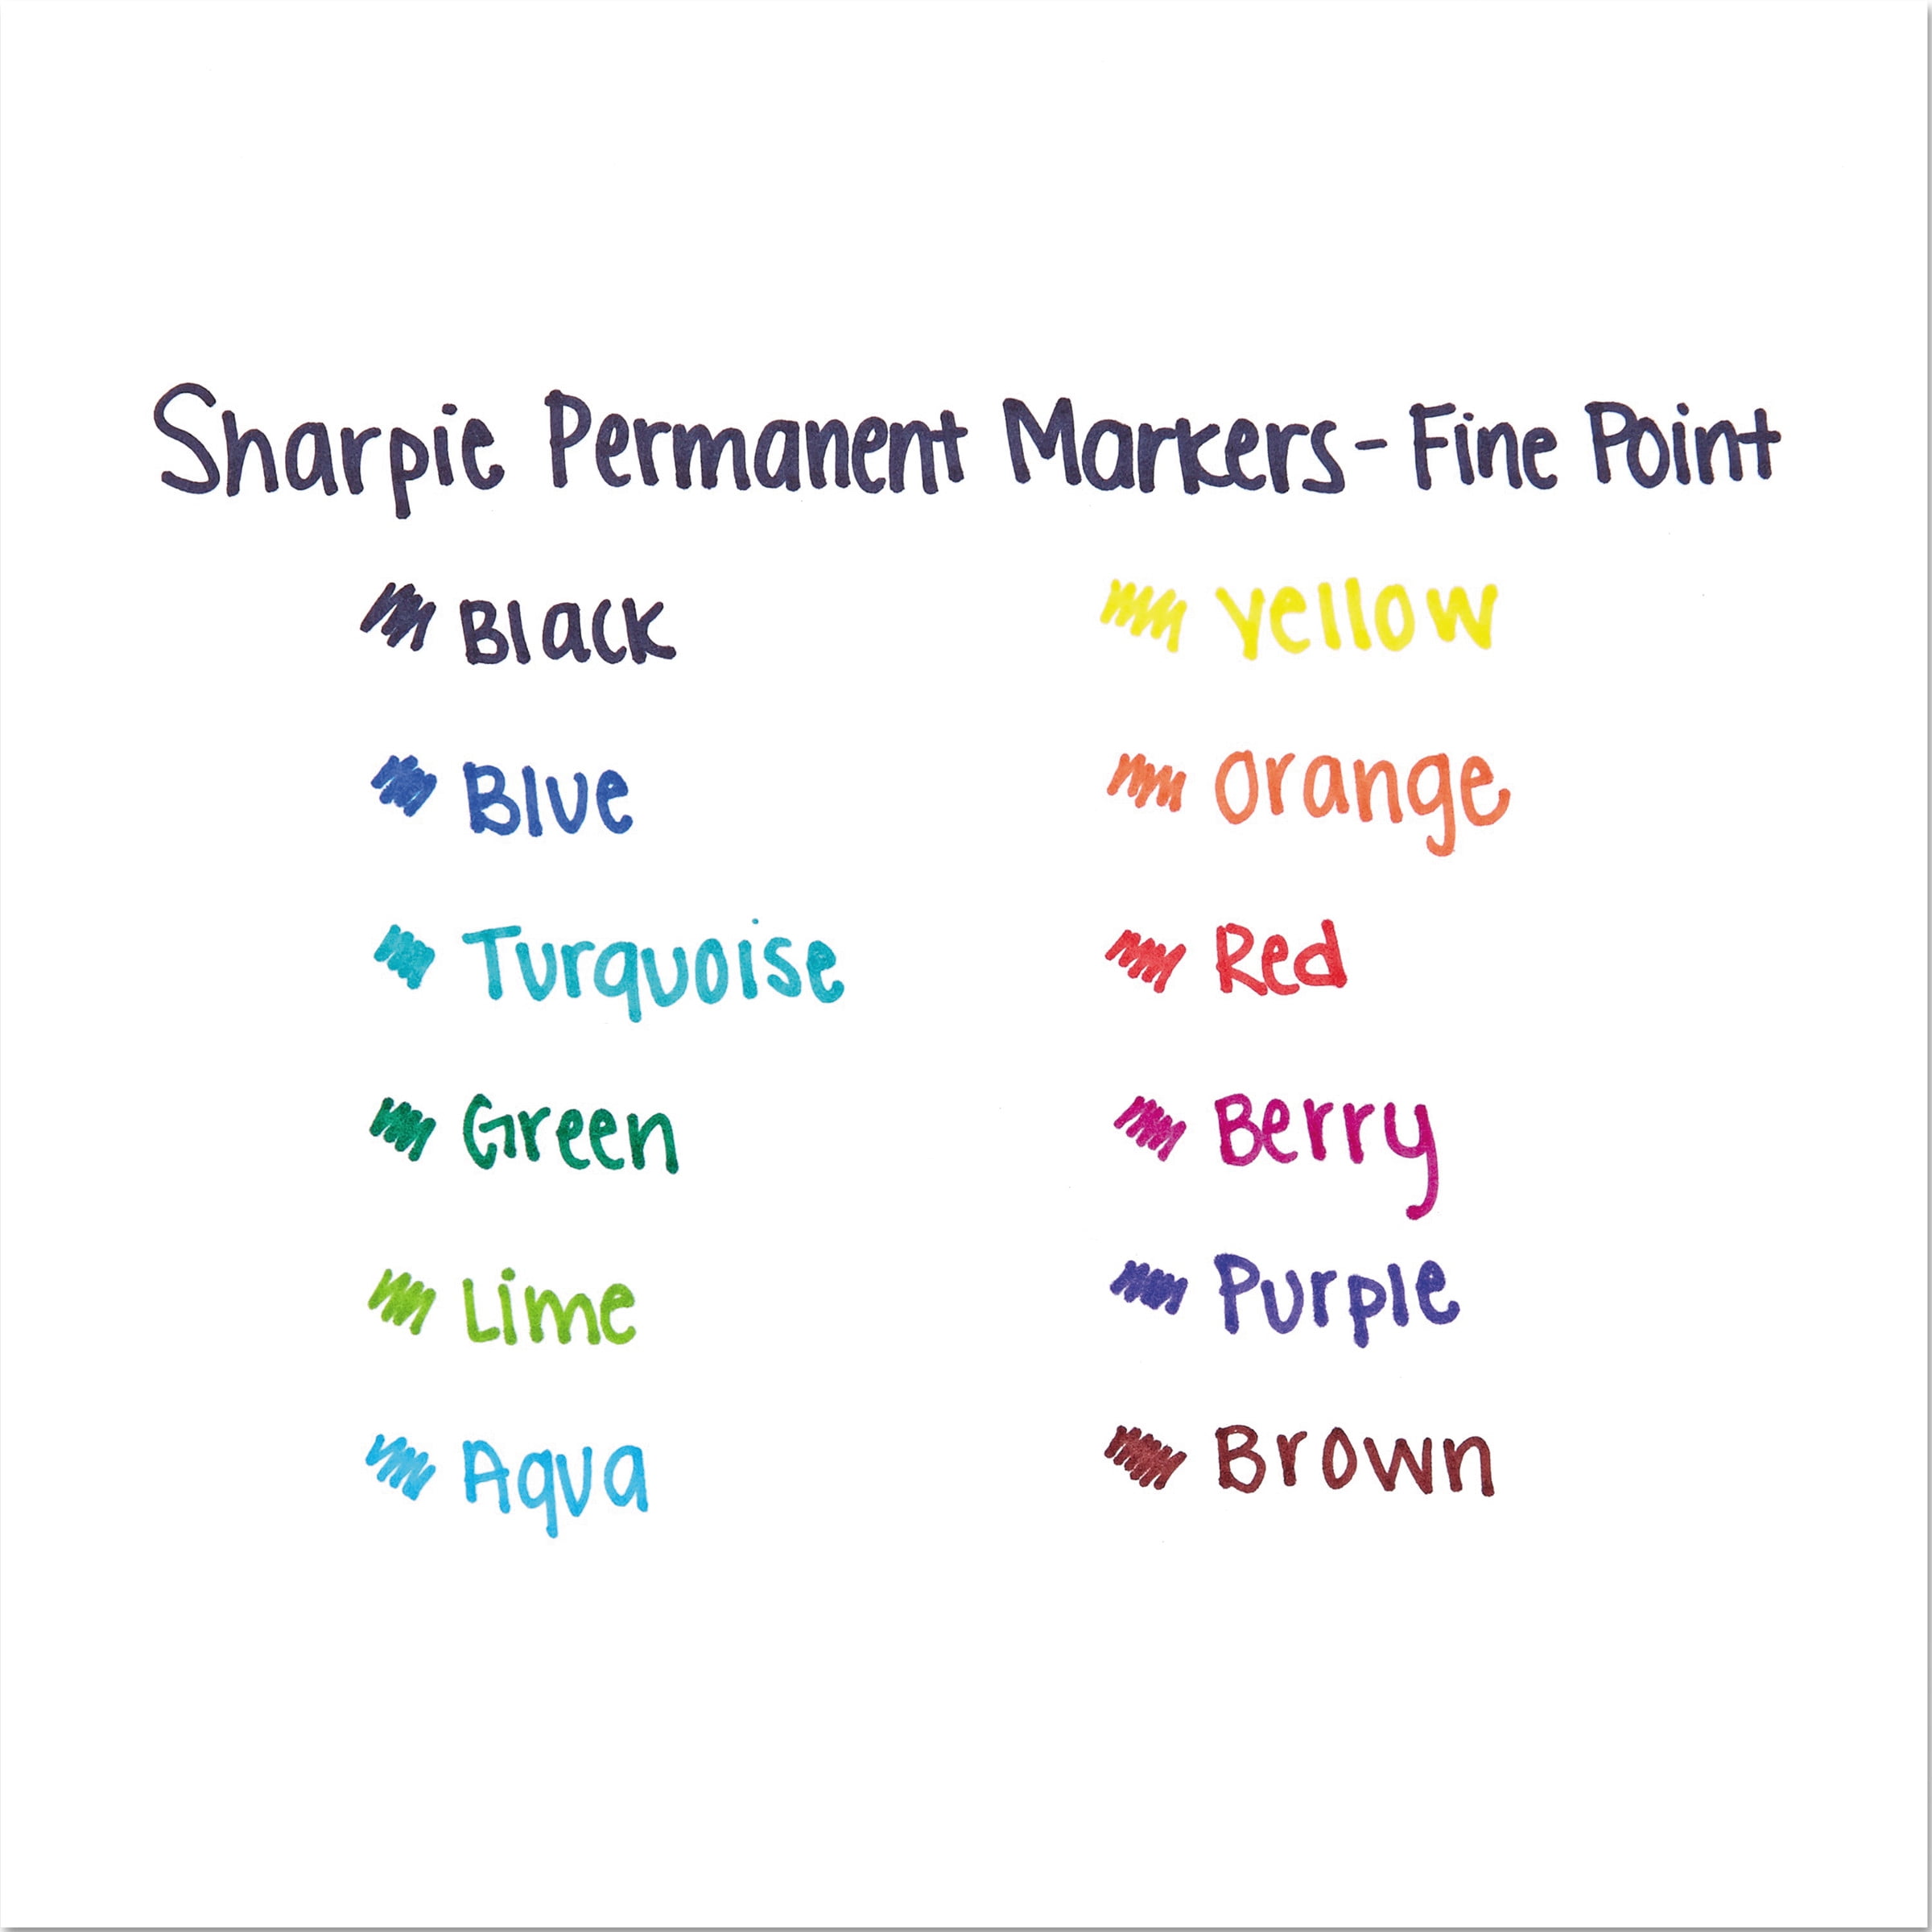 Permanent Markers, Fine Point, Black, 36 Count - SAN1884739, Sanford L.P.